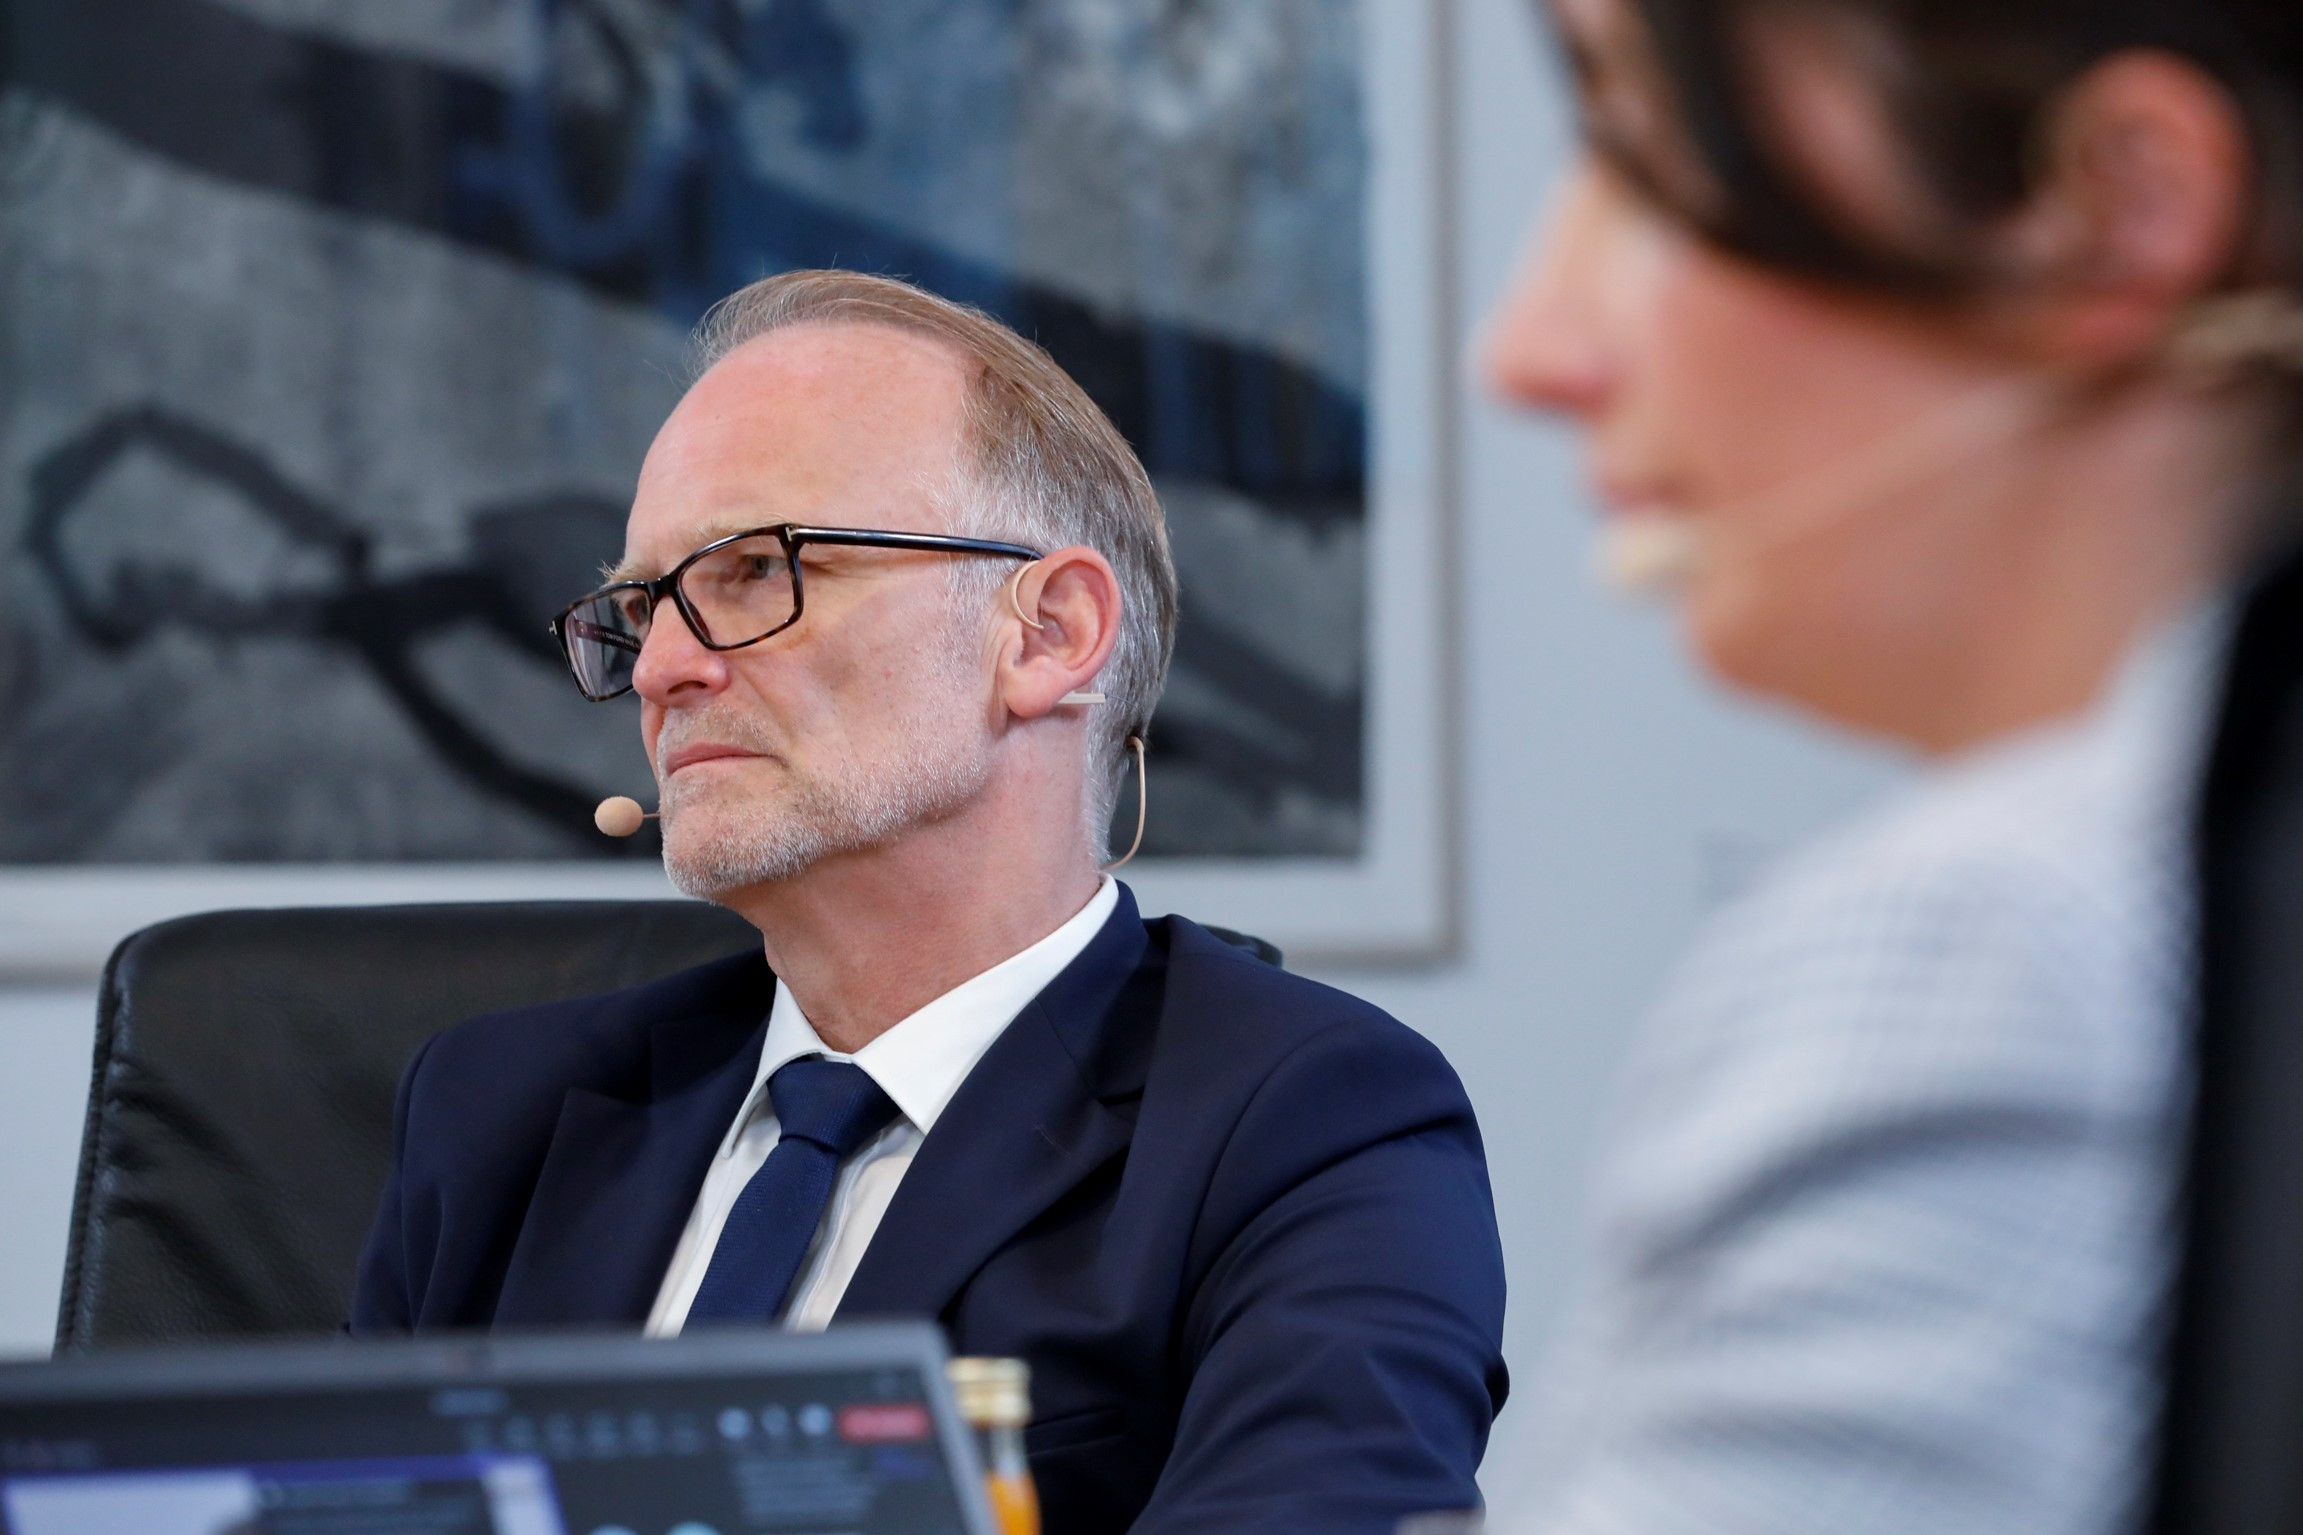 Ralf Düssel, Vorstandsvorsitzender von Plastics Europe Deutschland: „Die deutsche Kunststoffindustrie kann die Krise nur überstehen, wenn wir die hohen Energiepreise, die ein klarer Standortnachteil sind, schnellstmöglich in den Griff bekommen.“